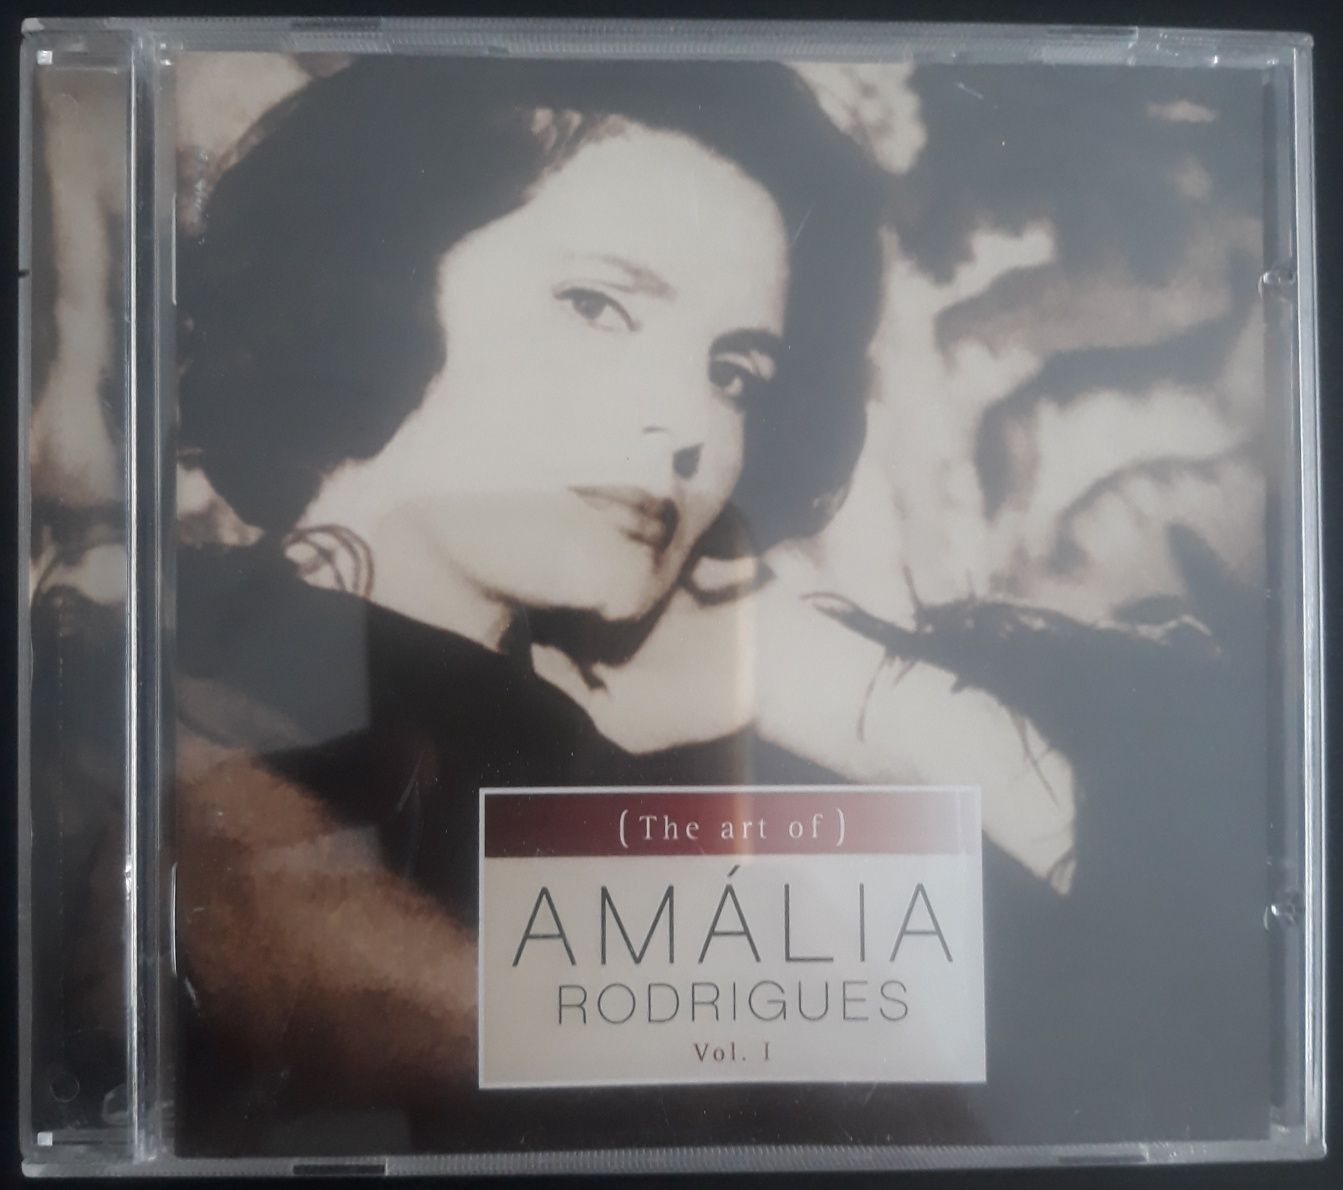 CD Amália Rodrigues - The Art of Amália Rodrigues Vol. 1